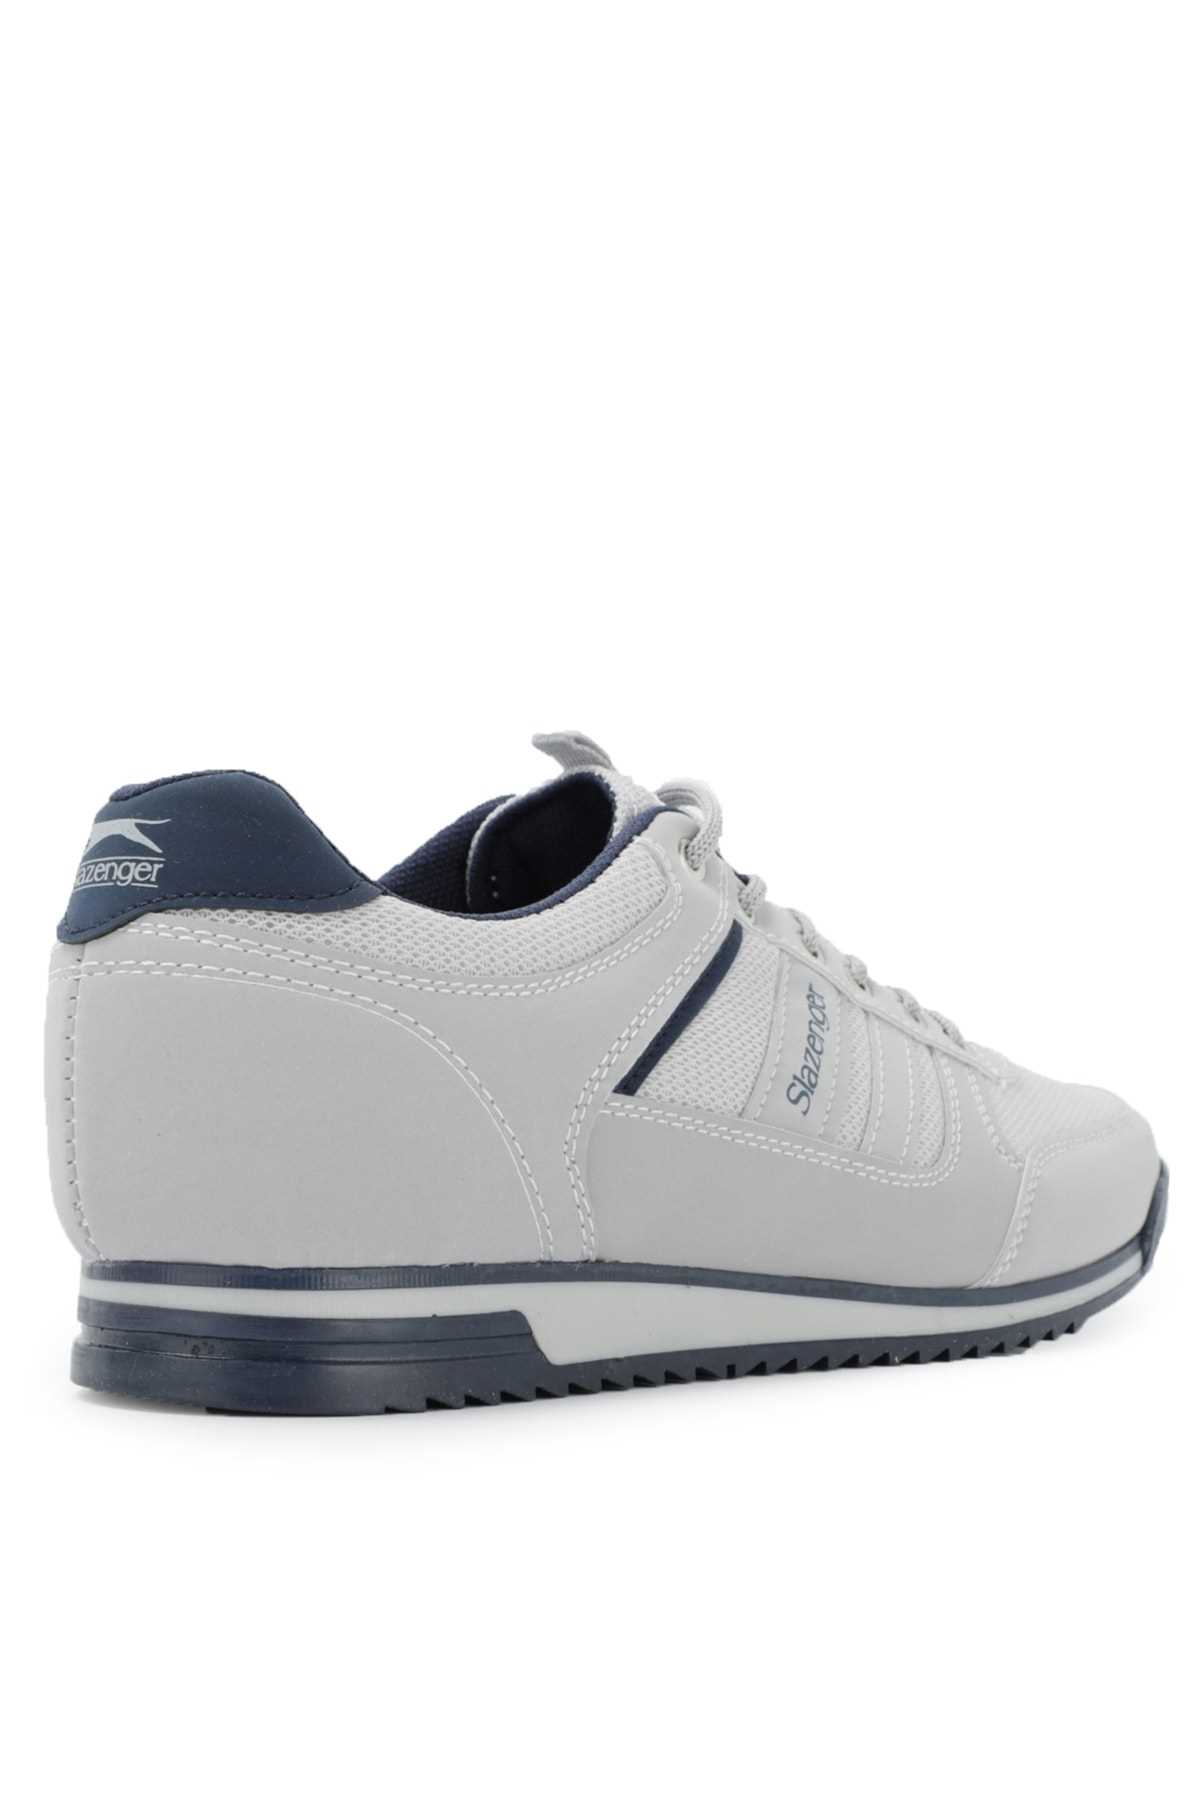 سفارش انلاین کفش مخصوص پیاده روی مردانه ساده زیبا اسلازنگر رنگ نقره ای ty79873581